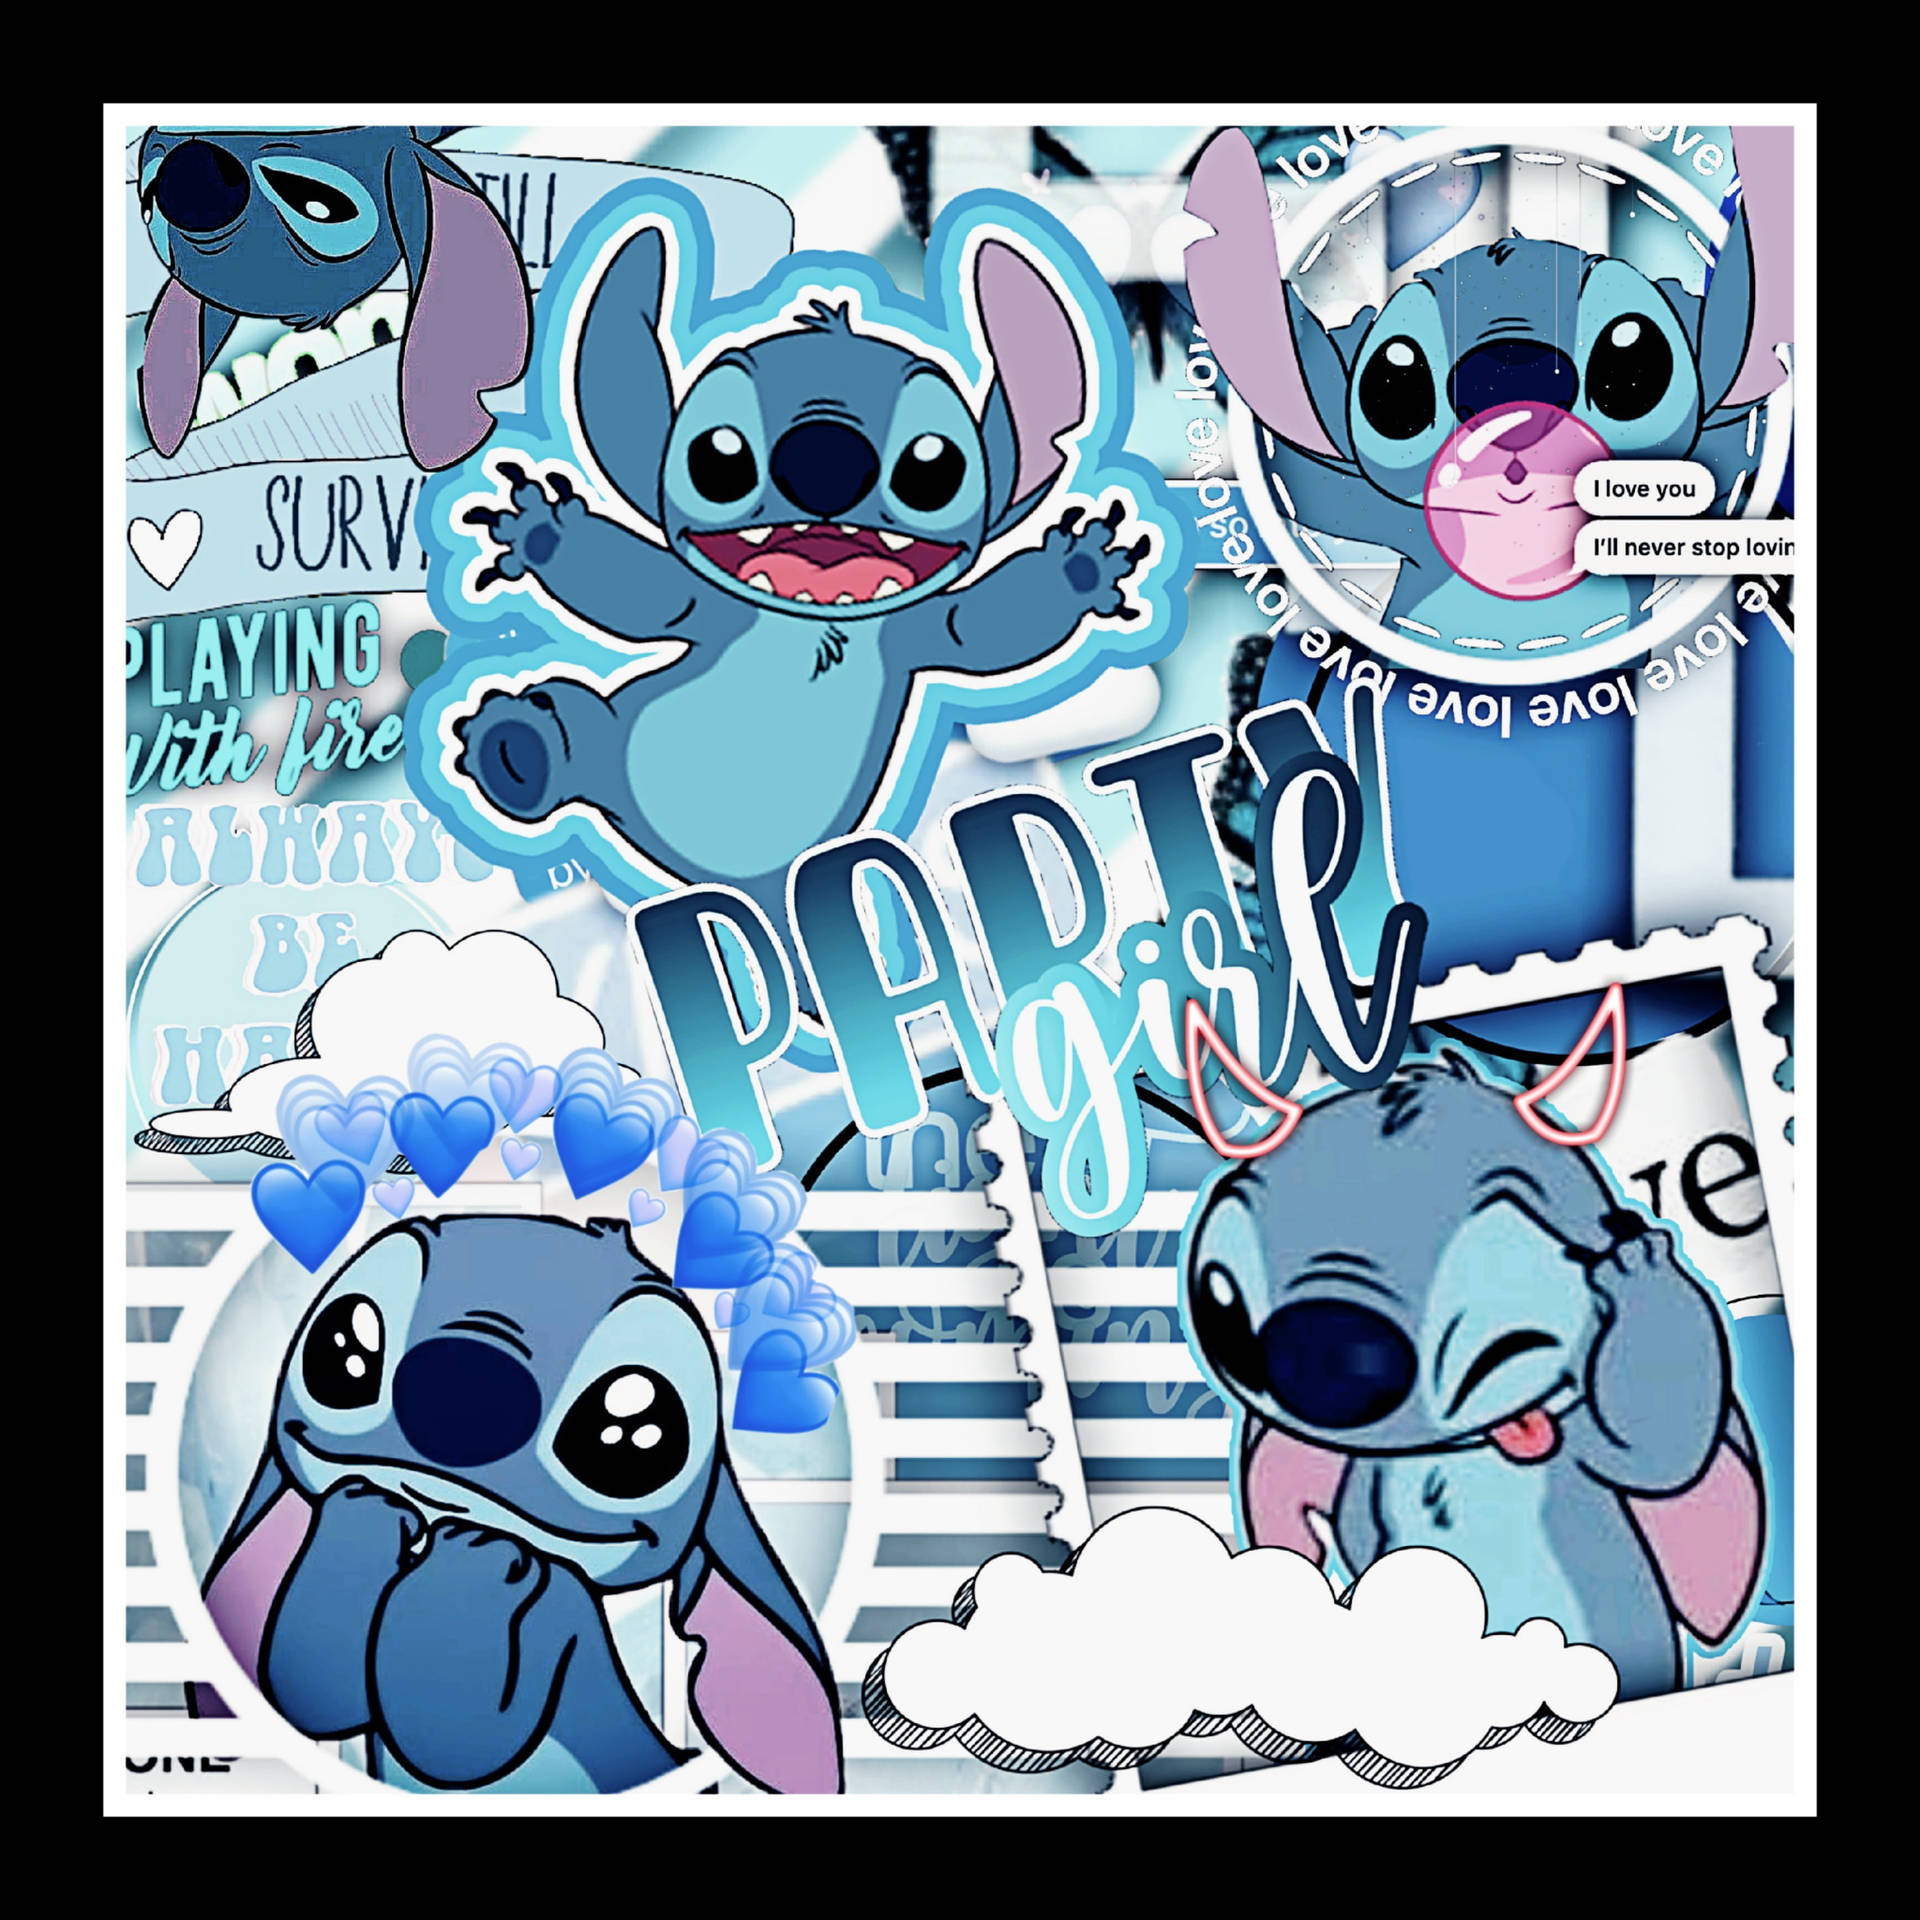 Free Cute Disney Stitch Wallpaper Downloads, [100+] Cute Disney Stitch  Wallpapers for FREE 